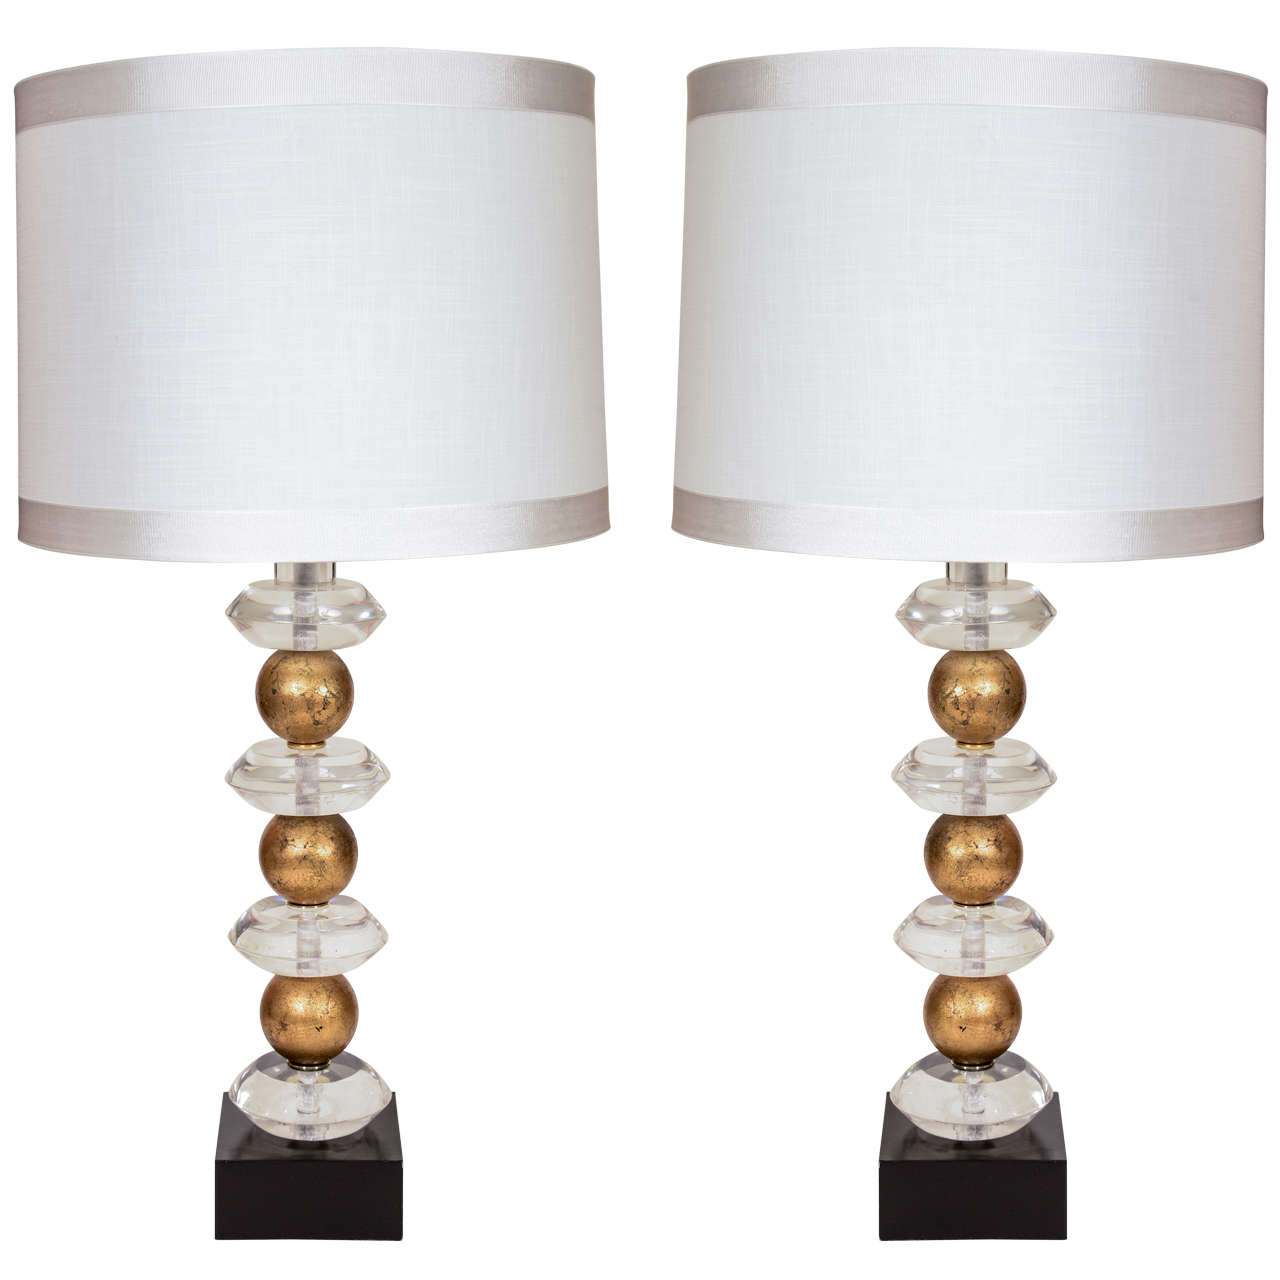 Pair of Lucite & Gilded Sphere Lamps by Van Teal